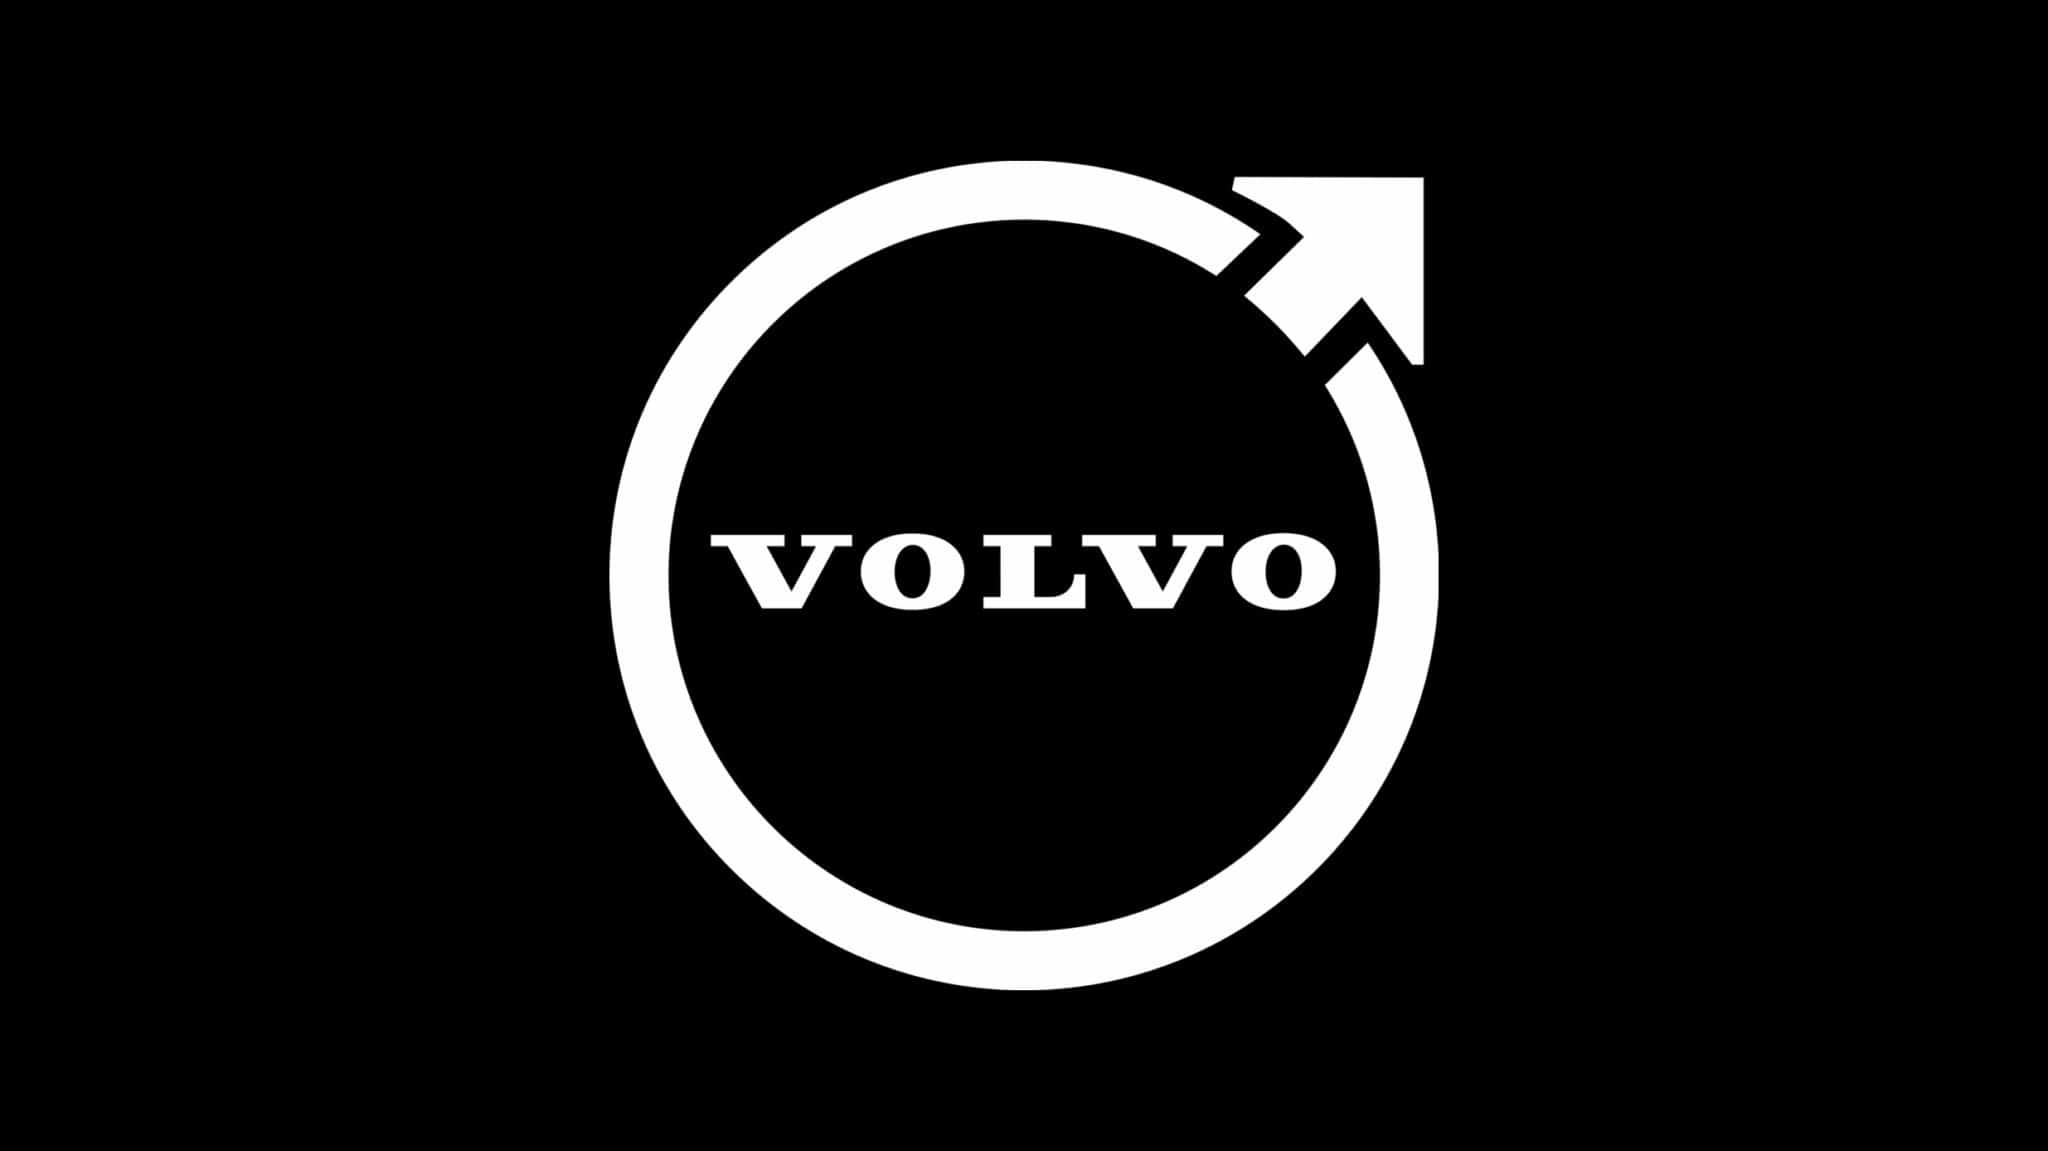 Volvo apresenta novo logo - GKPB - Geek Publicitário